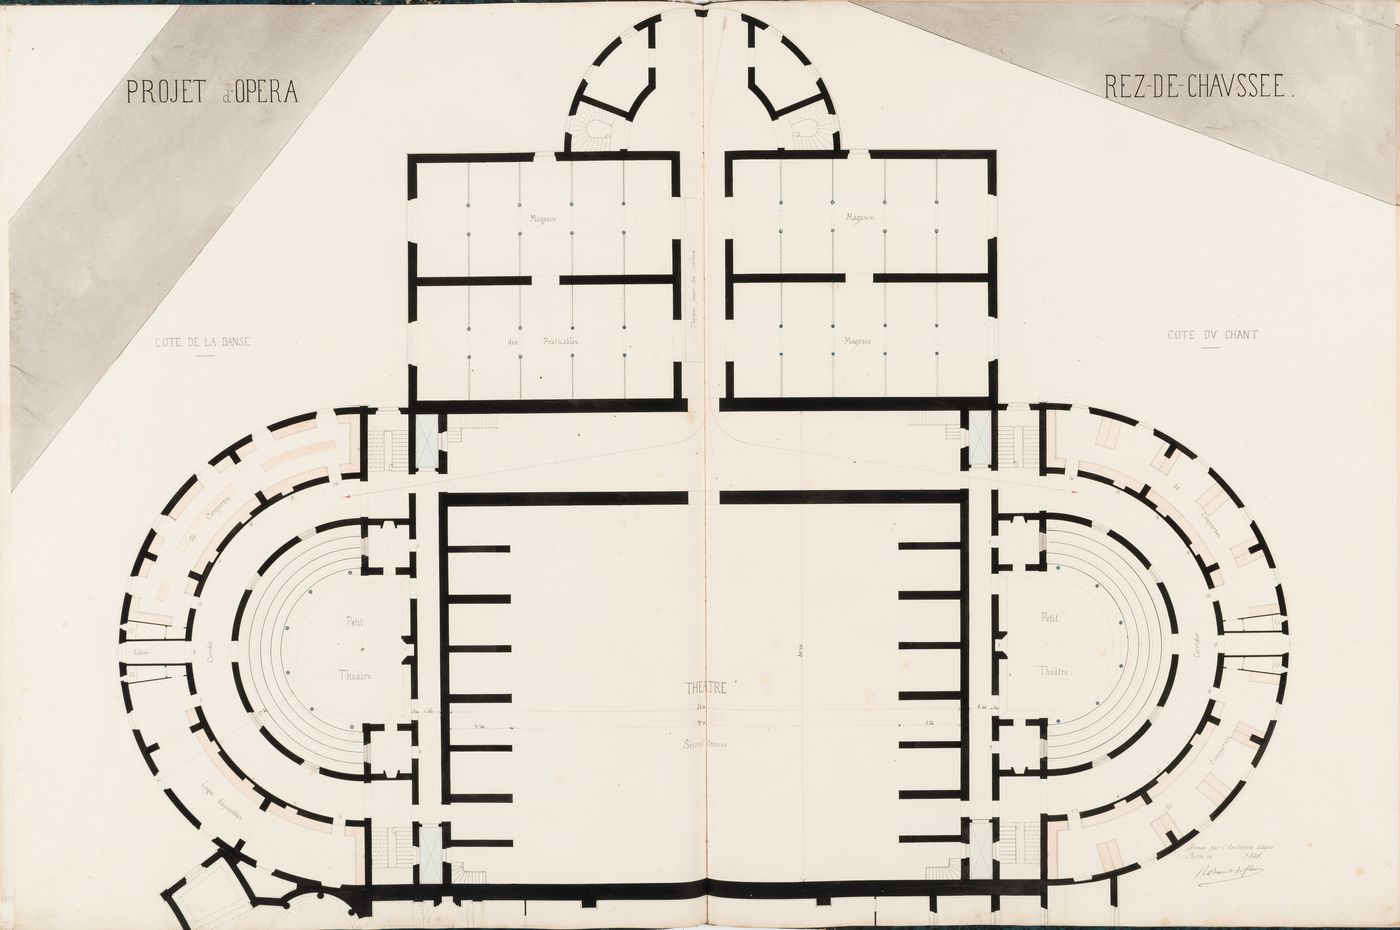 Project for an opera house for the Théâtre impérial de l'opéra: Ground floor plan showing the "cote de la danse", "cote du chant", and storerooms